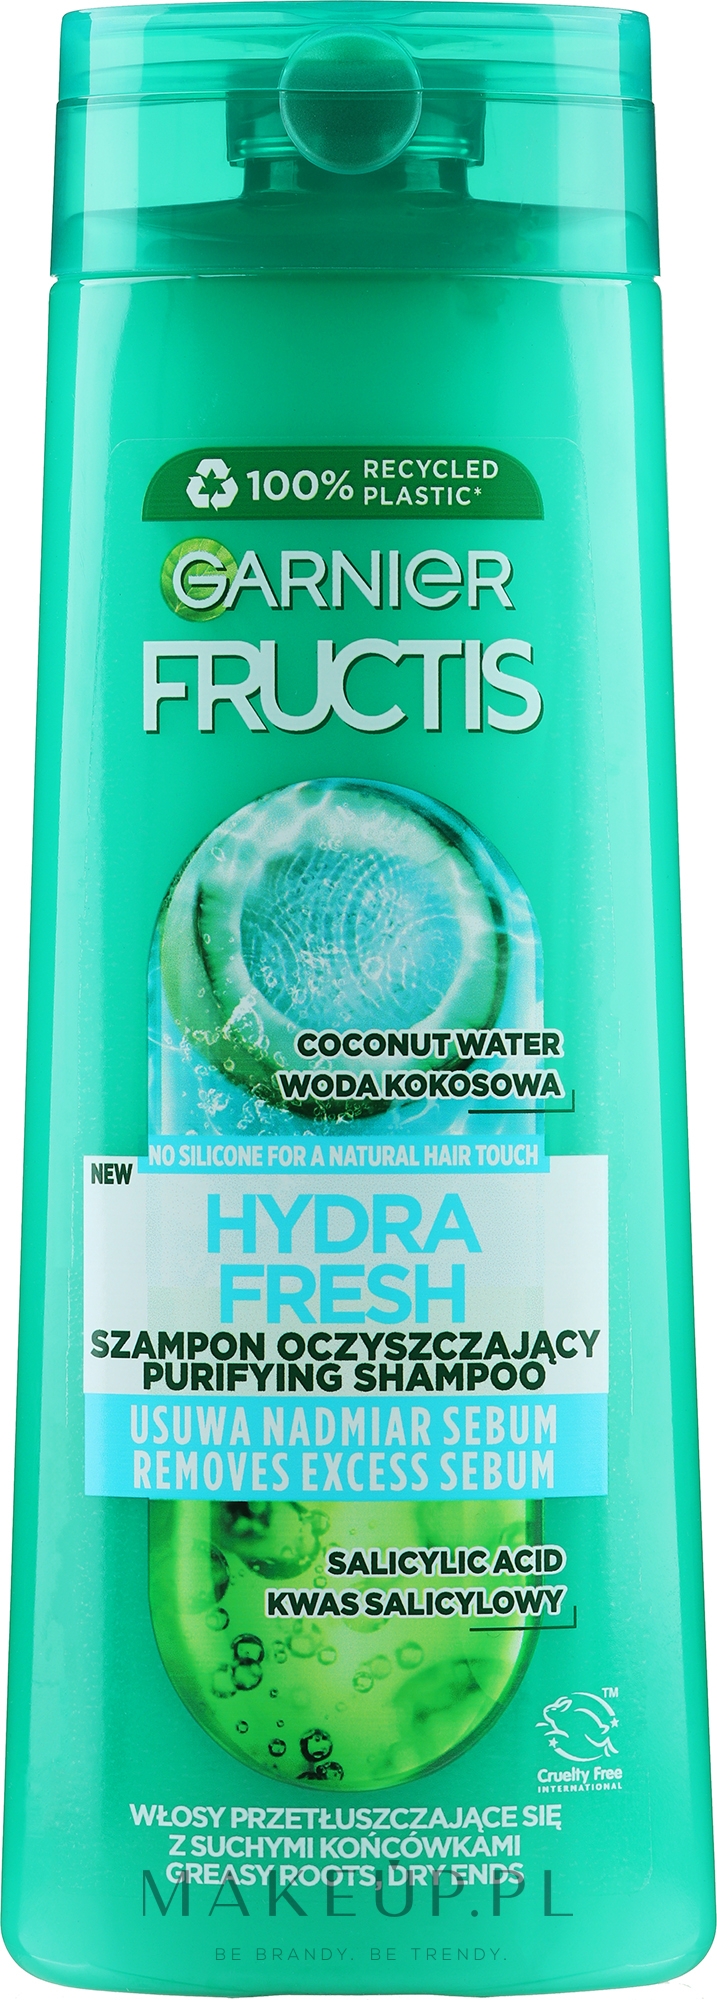 szampon do wlosow frucitis